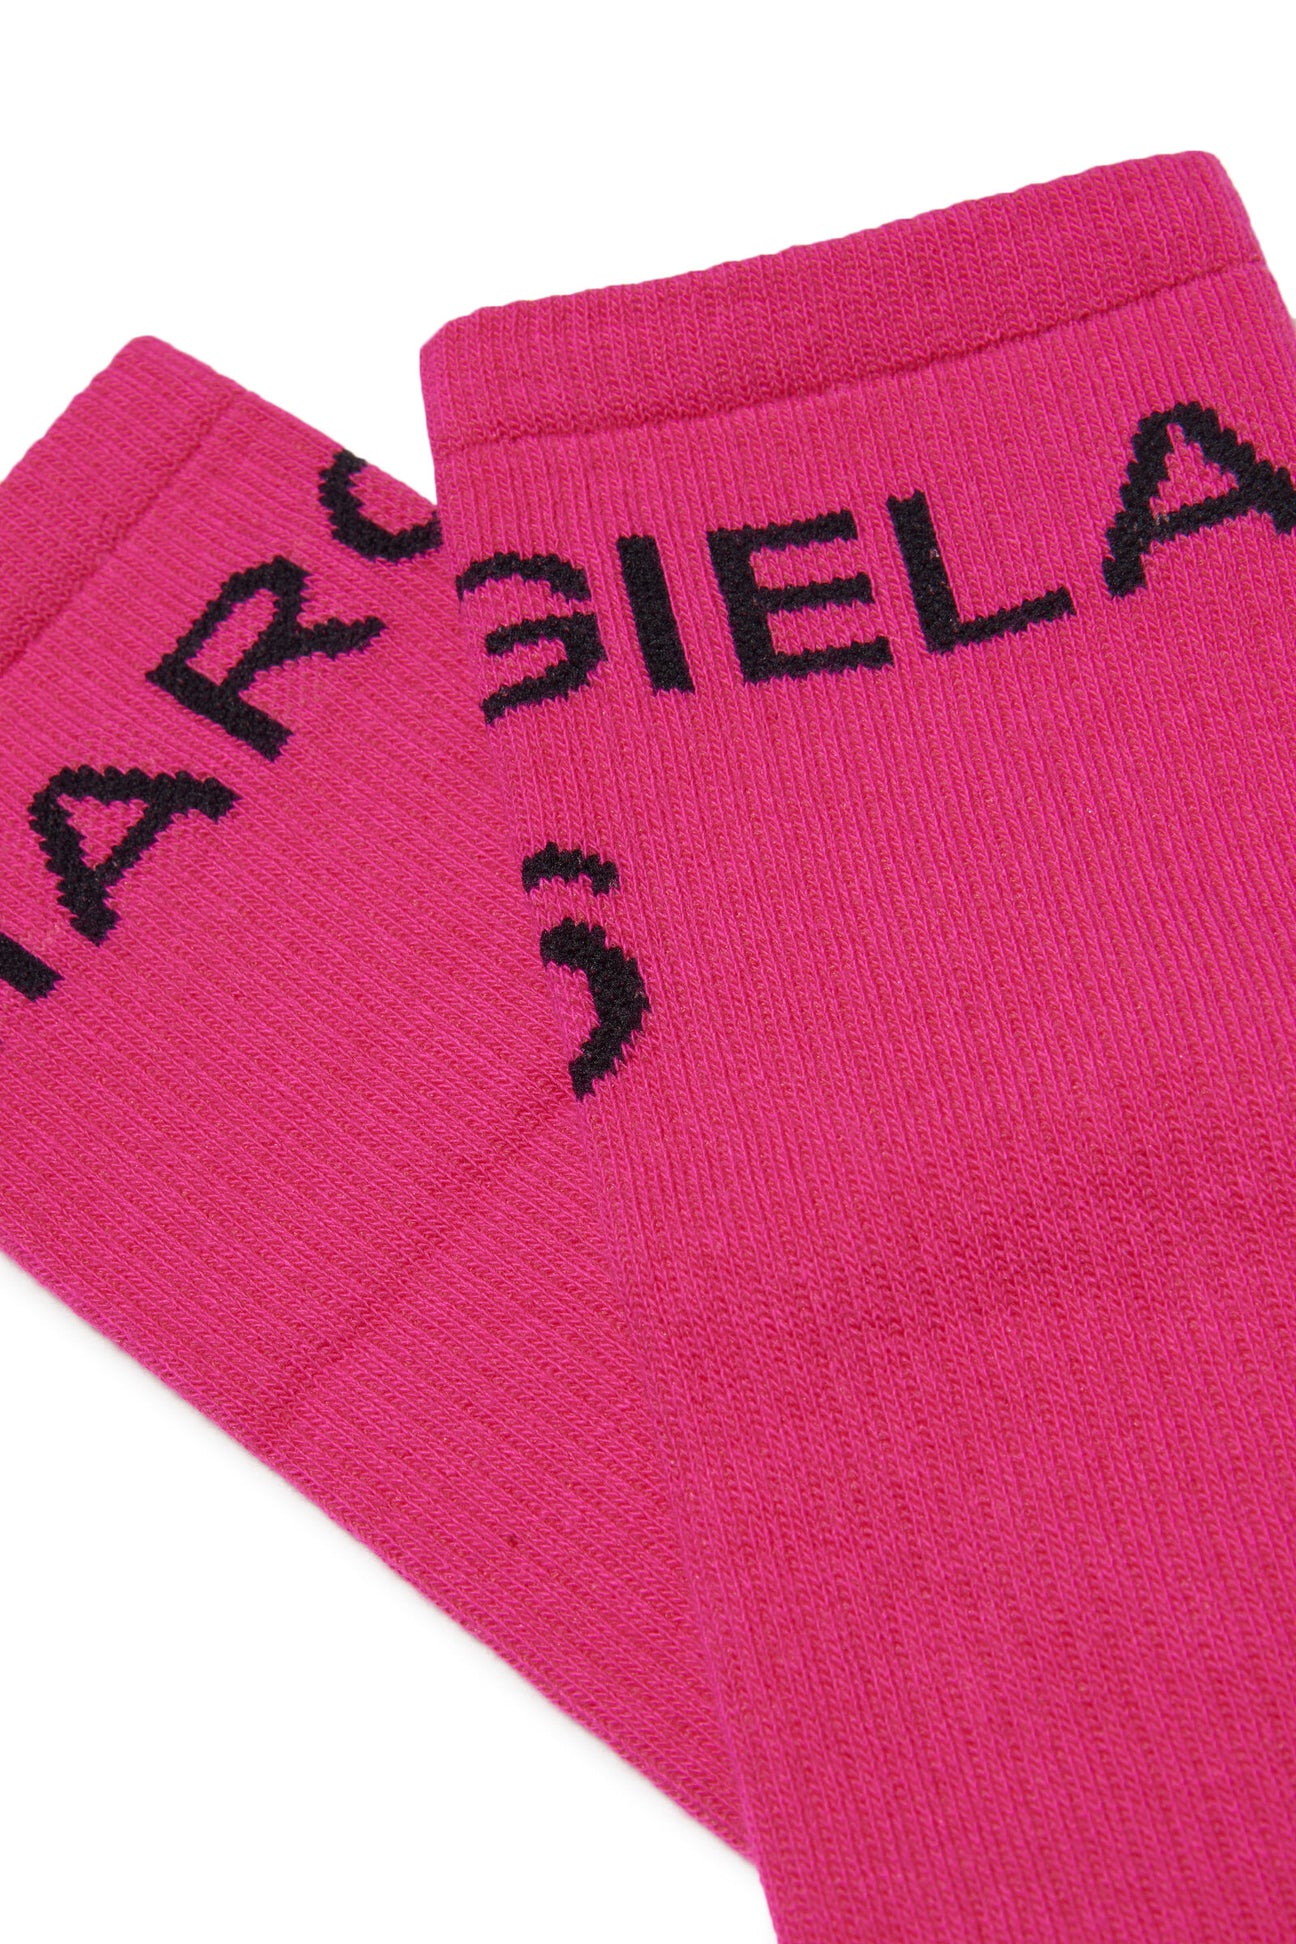 Calzini rosa in cotone con logo Calzini rosa in cotone con logo